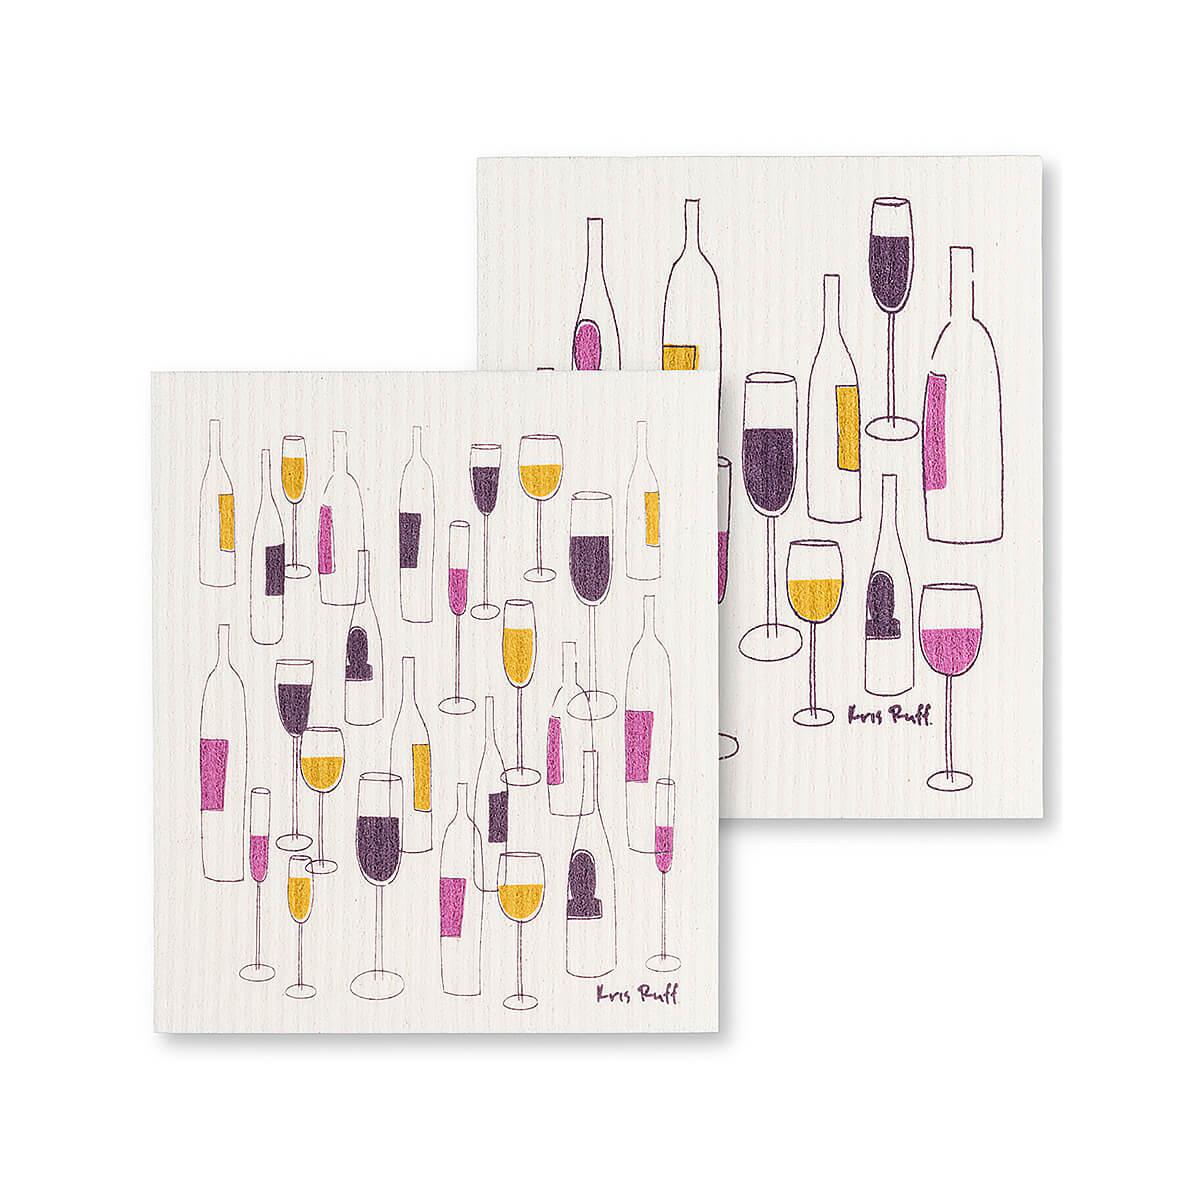  Wine Bottles And Glasses Dishcloths - 2 Pack